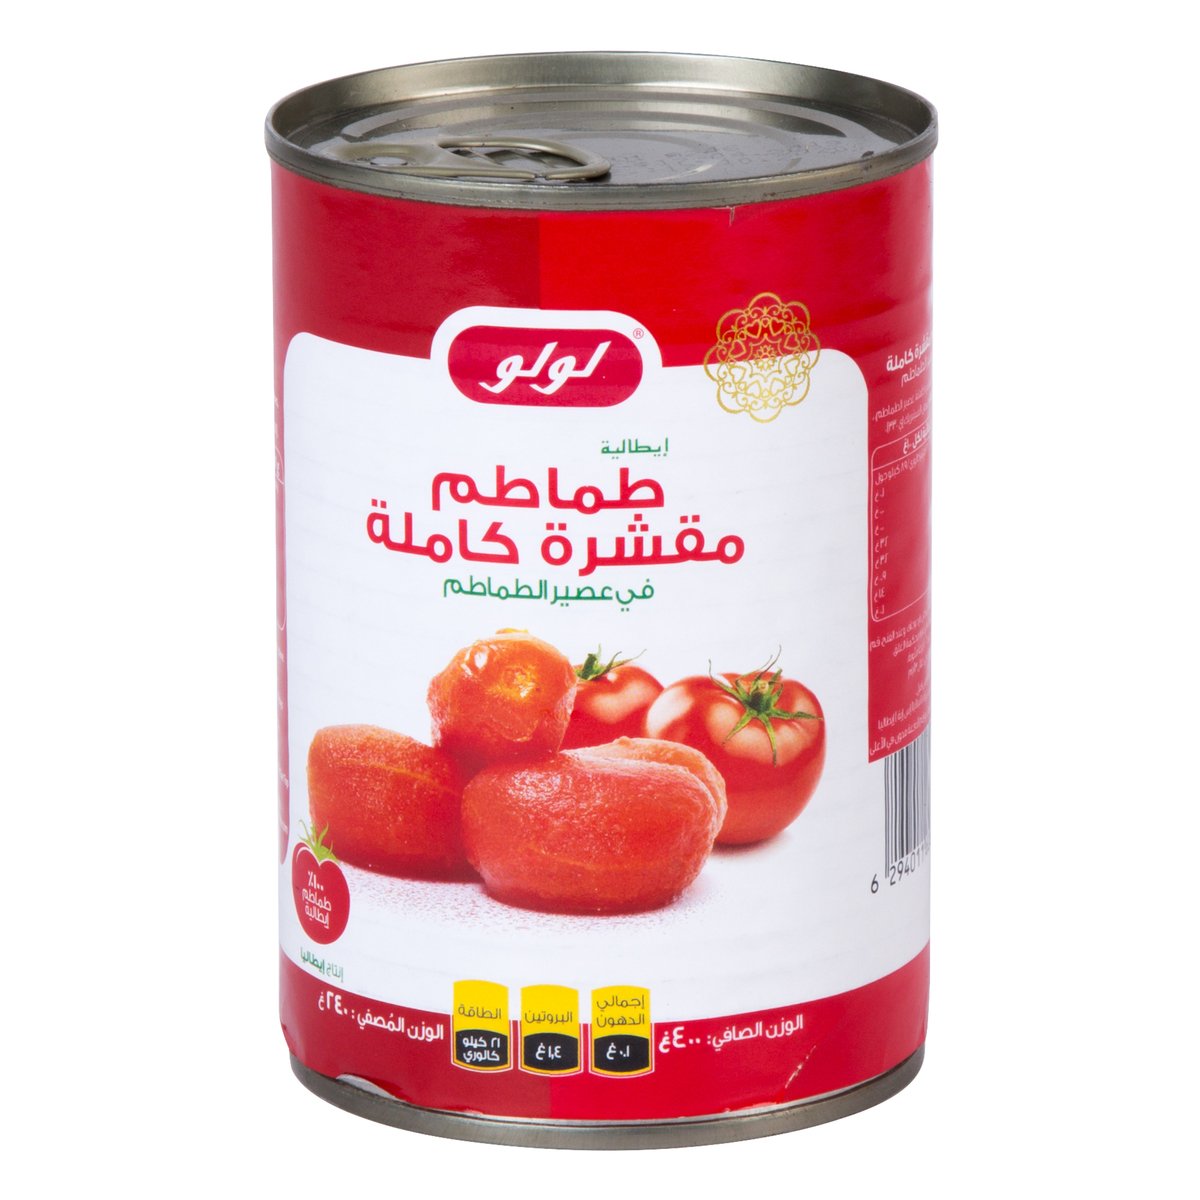 LuLu Whole Peeled Tomatoes in Tomato Juice 400 g